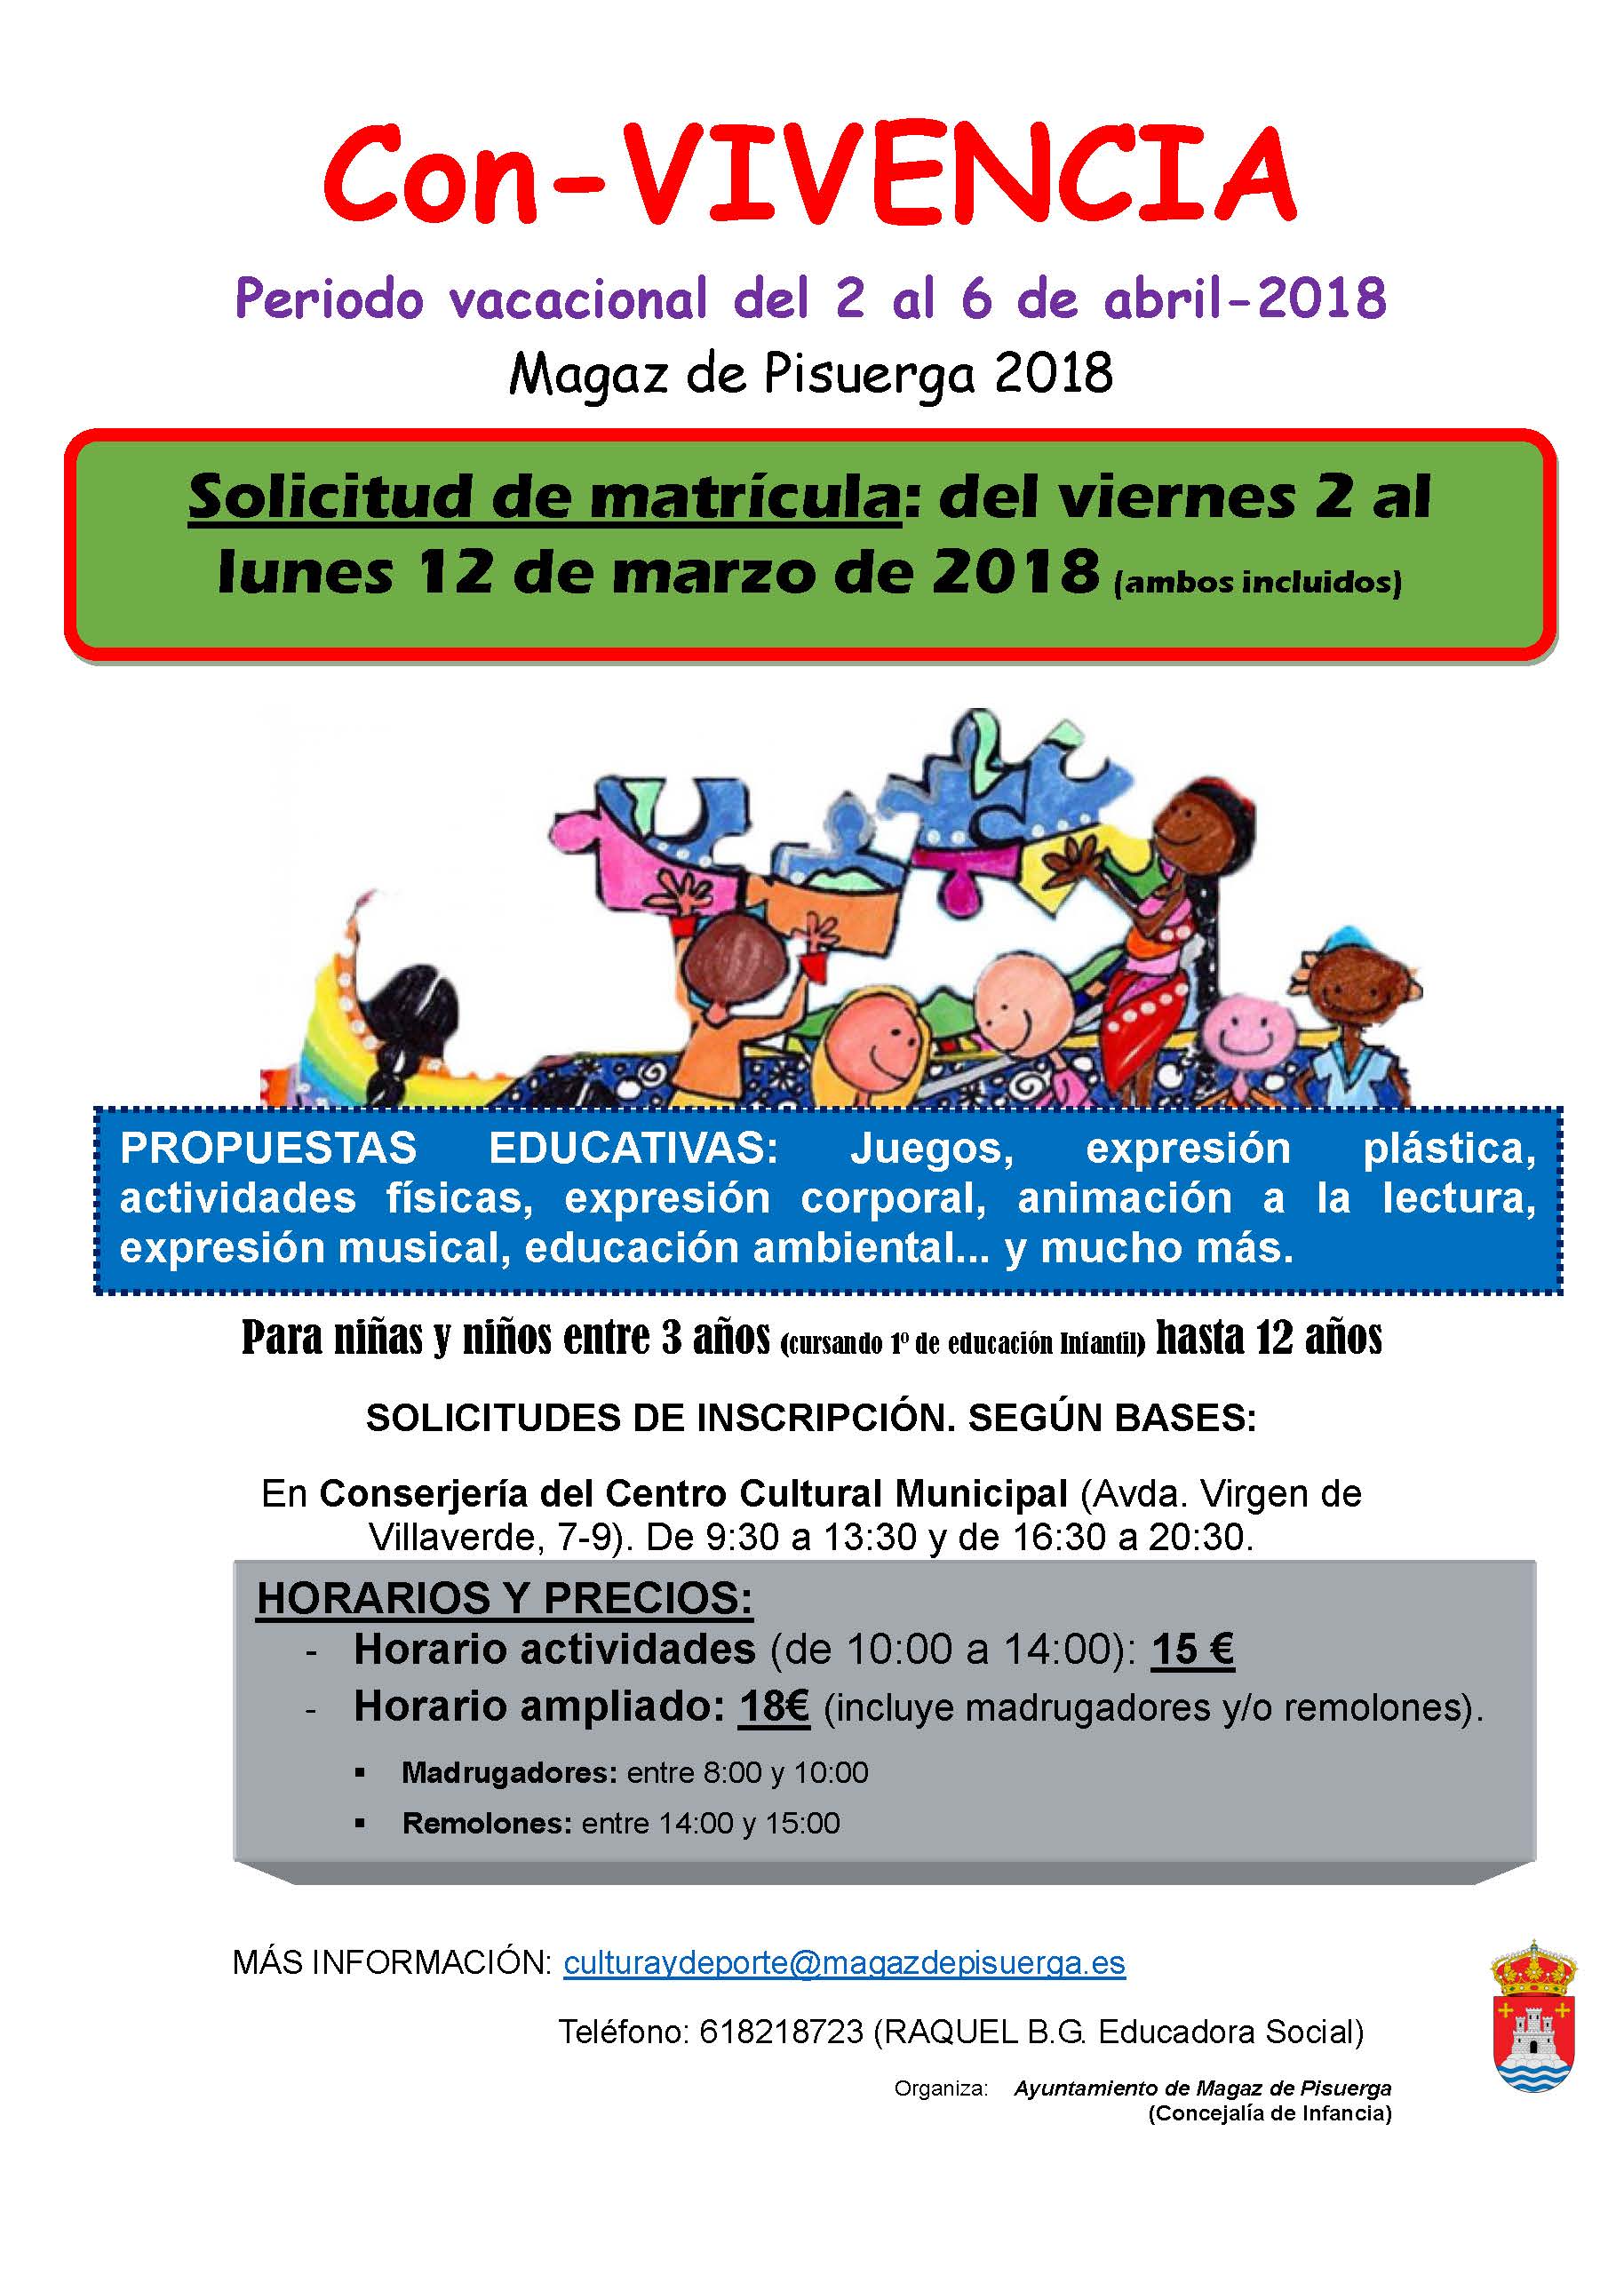 Programa “CON-VIVENCIA DE VACACIONES. ABRIL 2018”